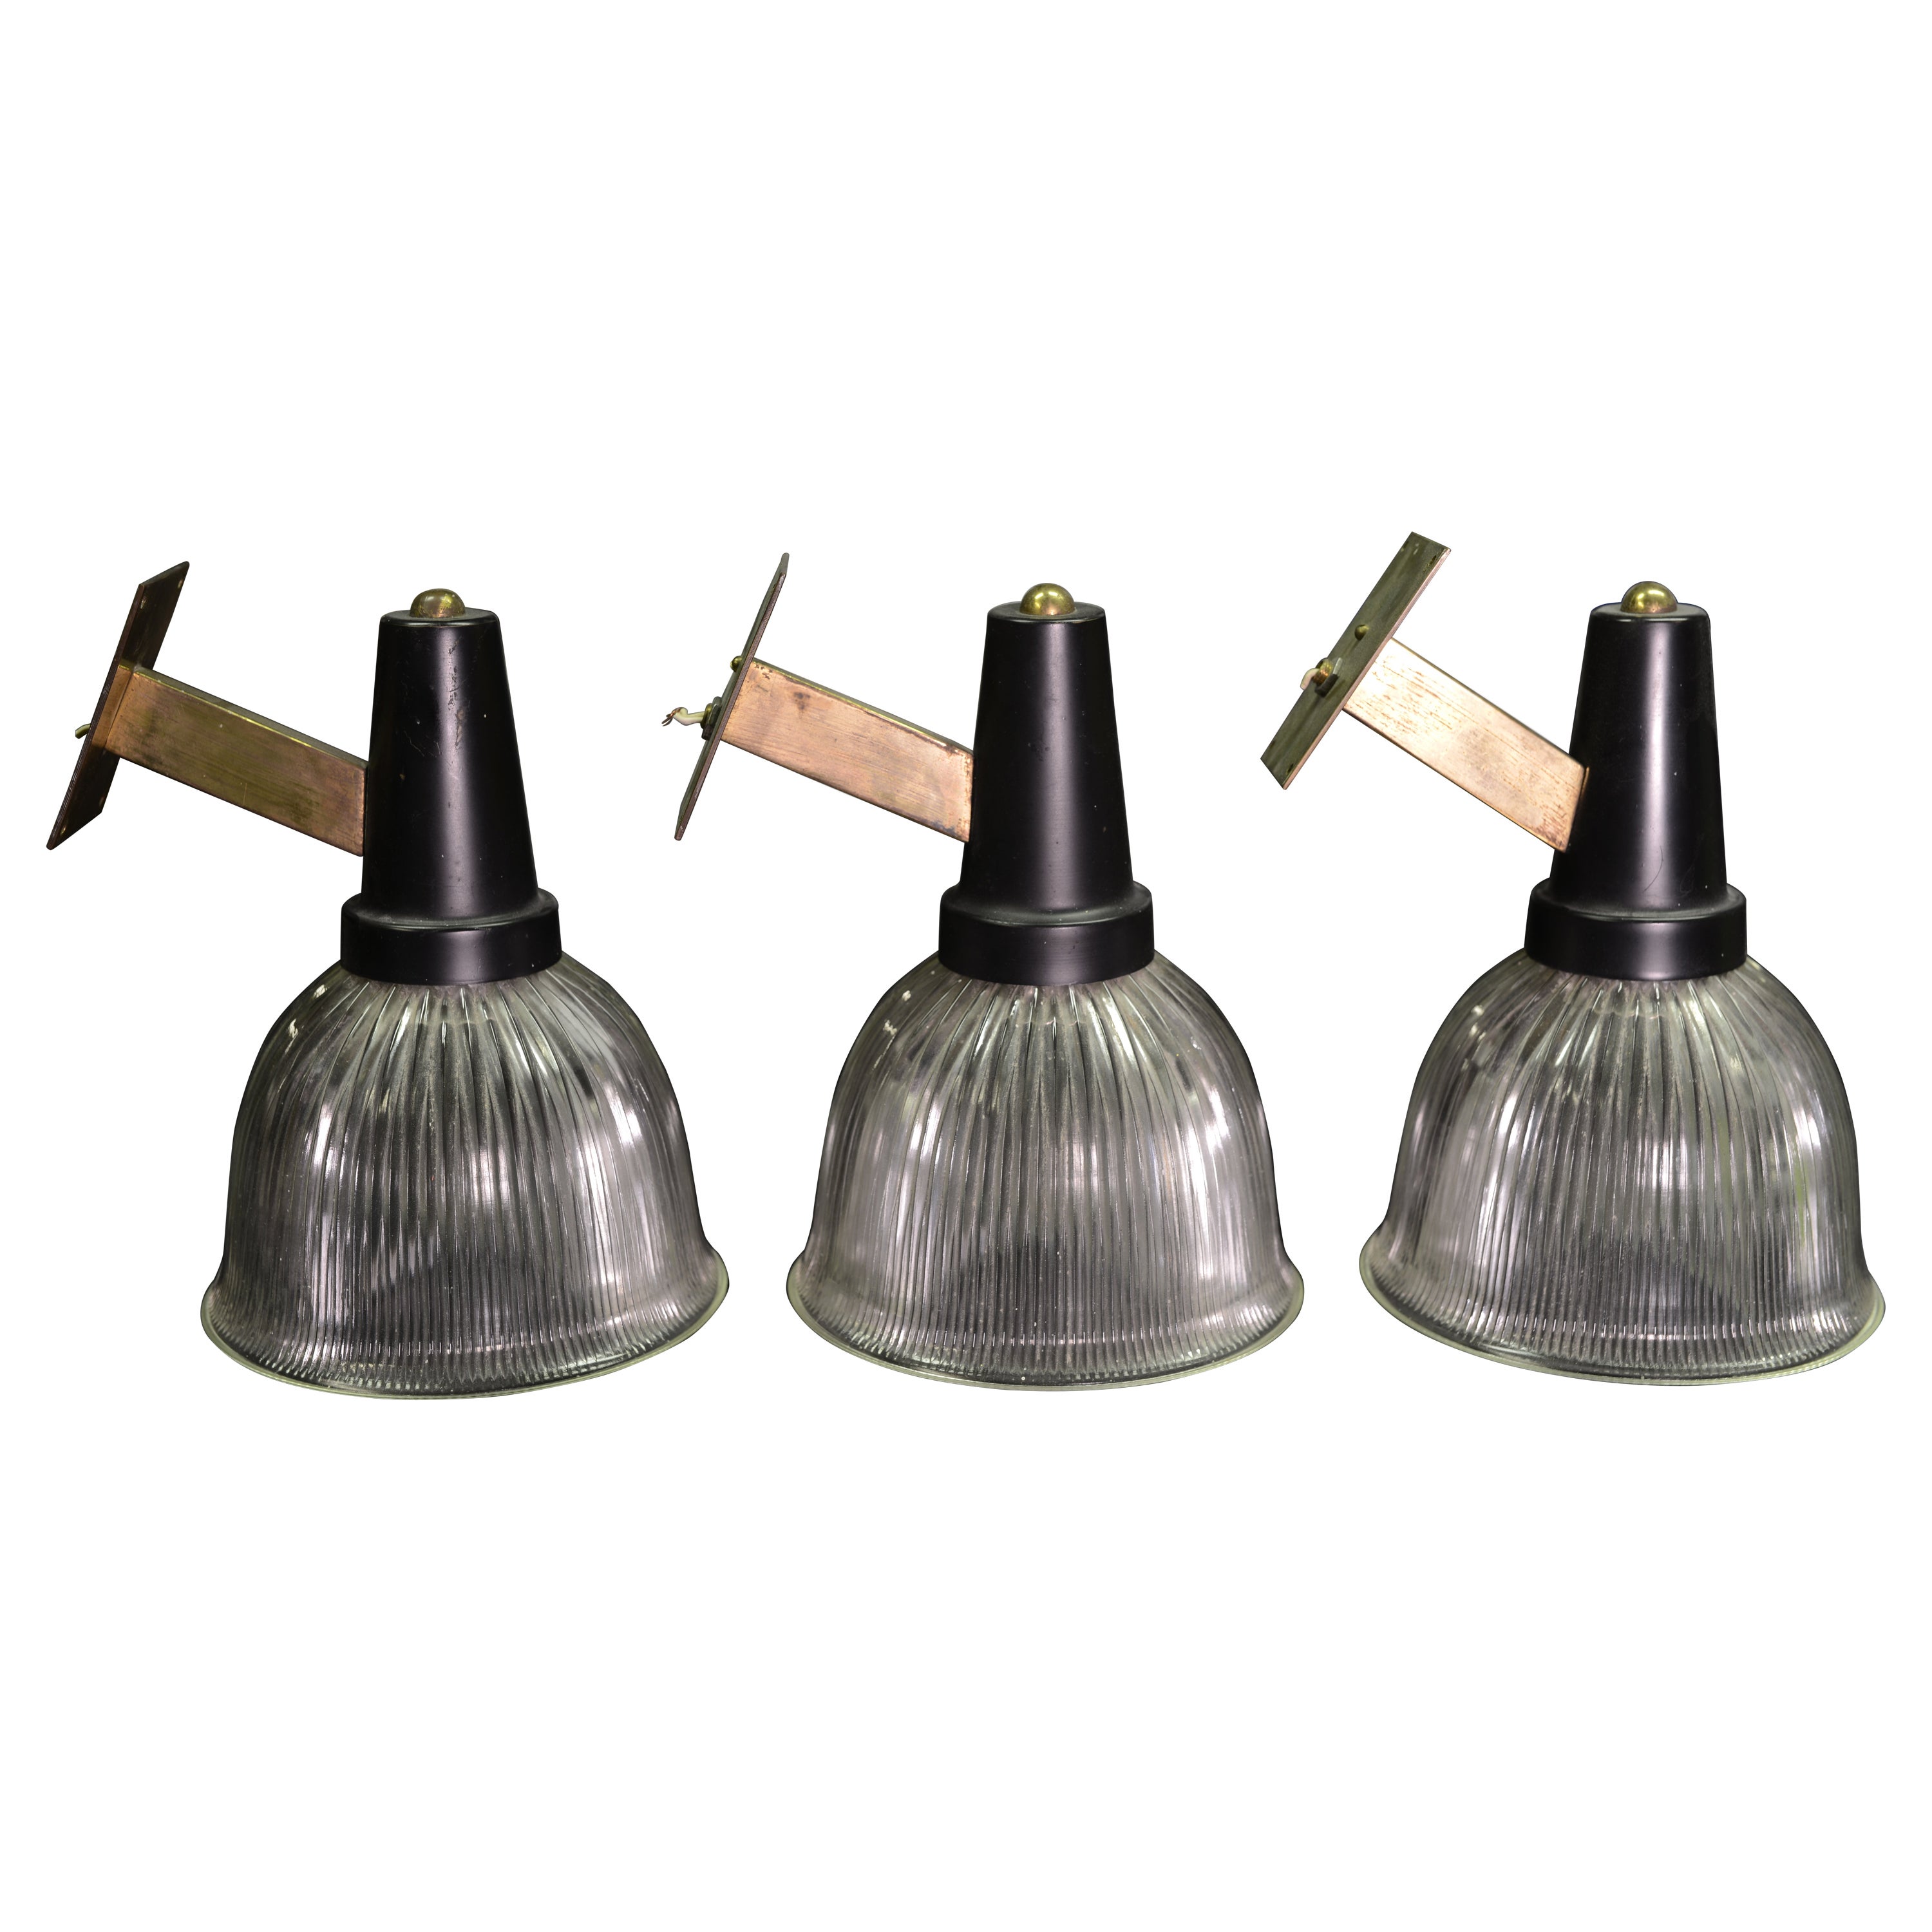 3 Wall Lamps dans le gout de Gardella 1950s Mid-Century Modern For Sale